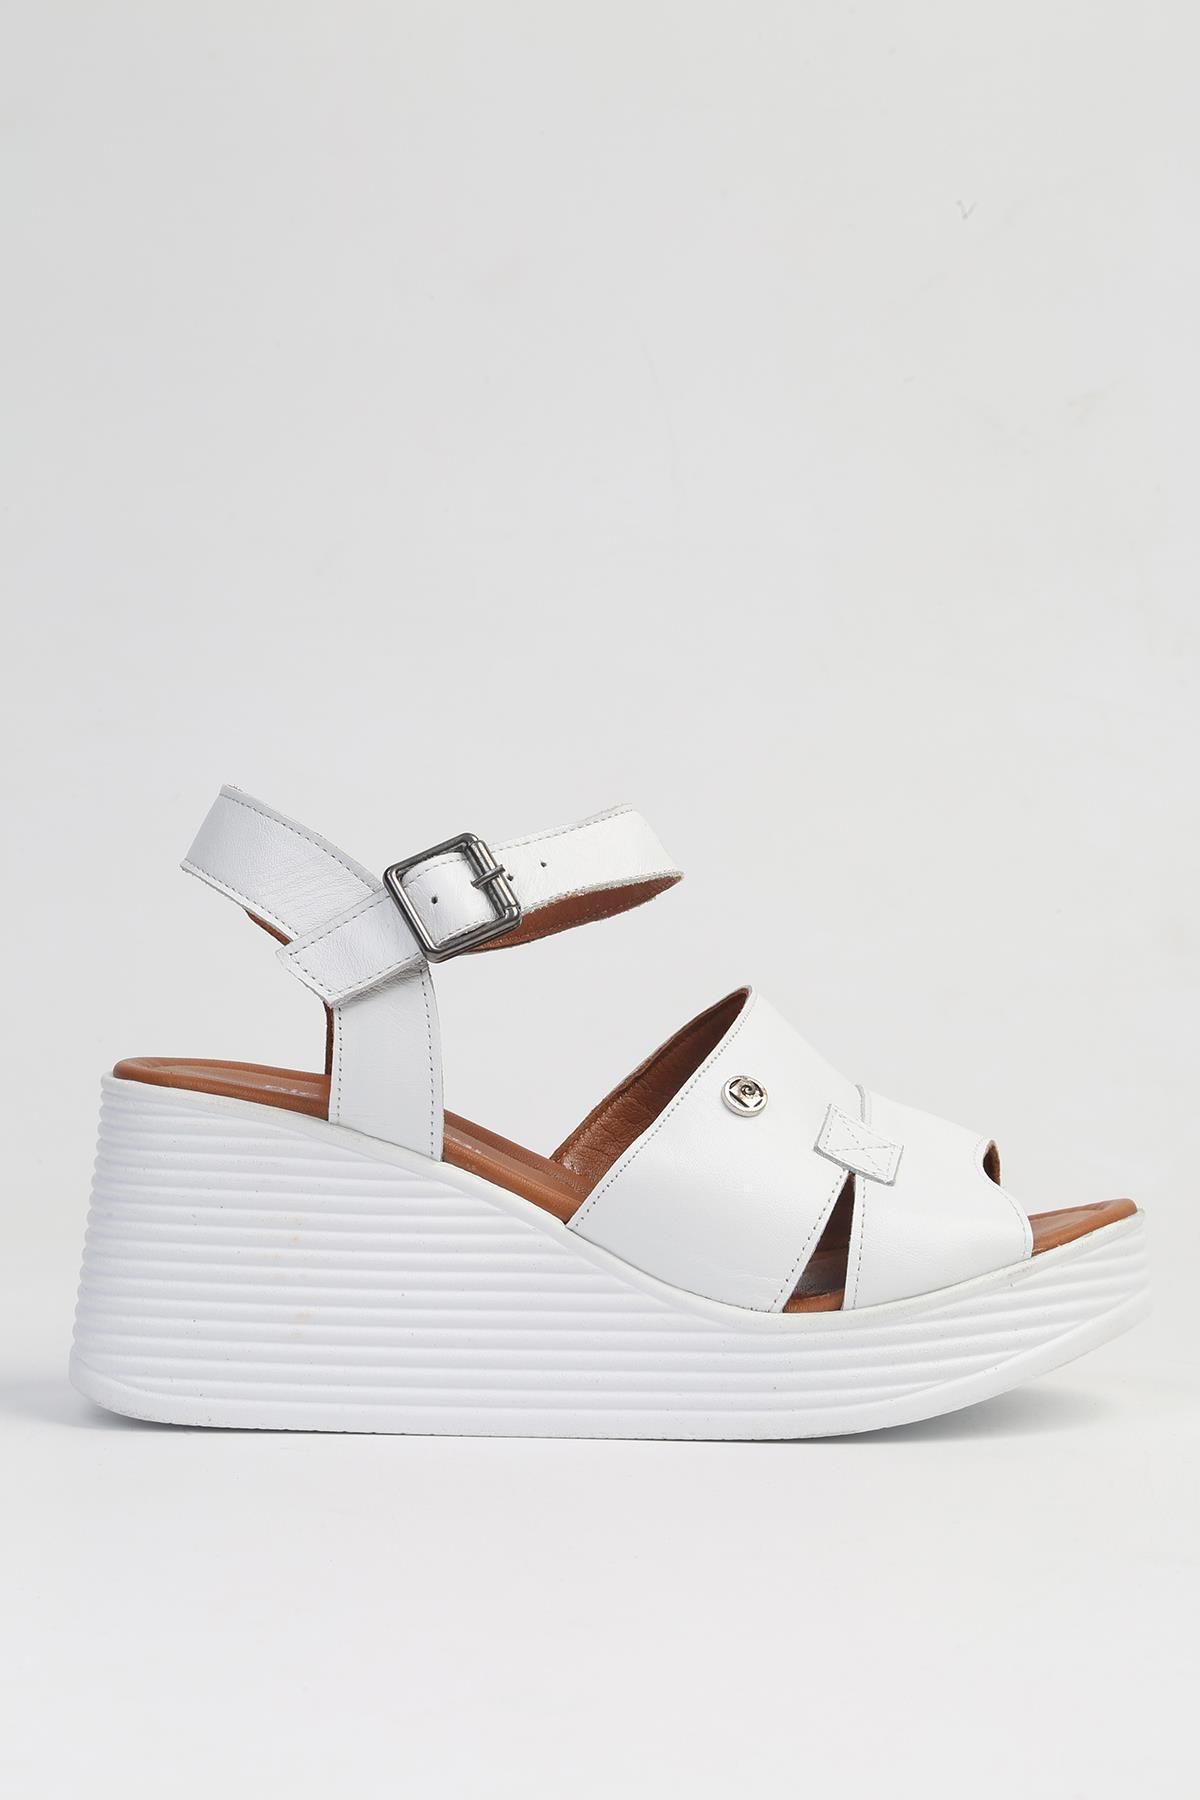 Pierre Cardin ® | PC-7061 Beyaz-Kadın Dolgu Topuk Ayakkabı